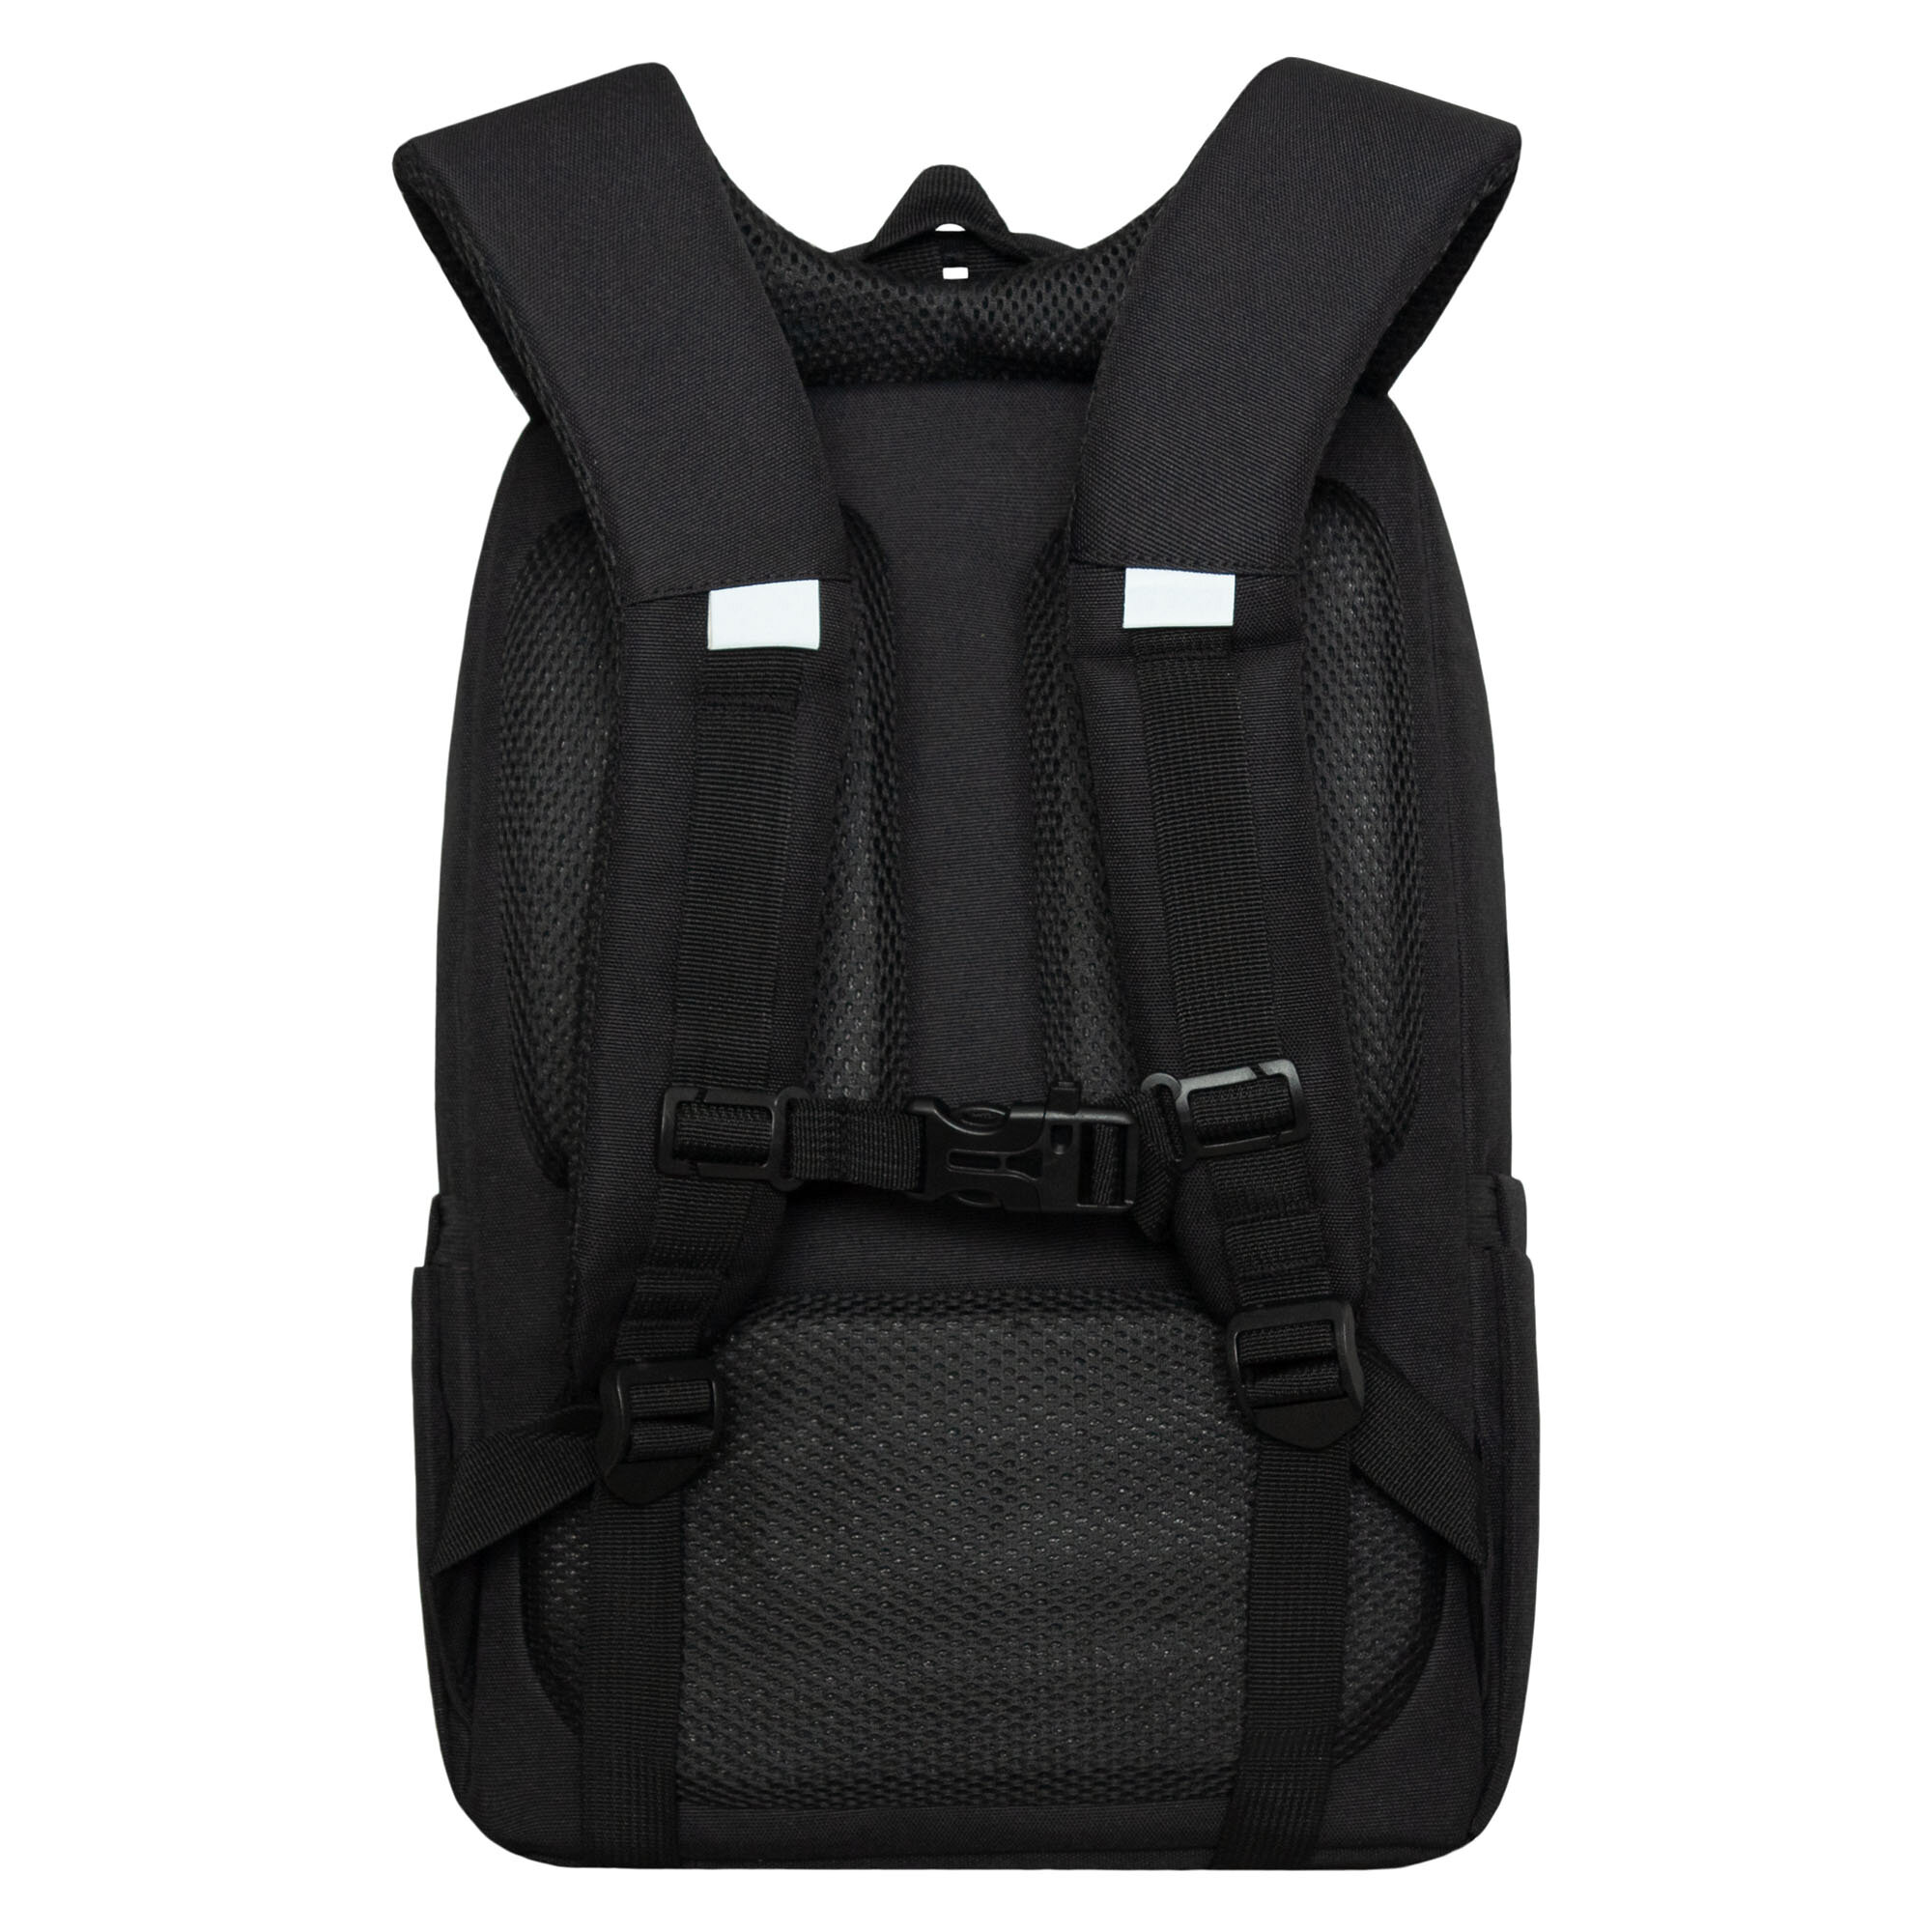 Рюкзак школьный GRIZZLY с карманом для ноутбука 13", двумя отделениями, анатомической спинкой, для девочки RG-466-1/1